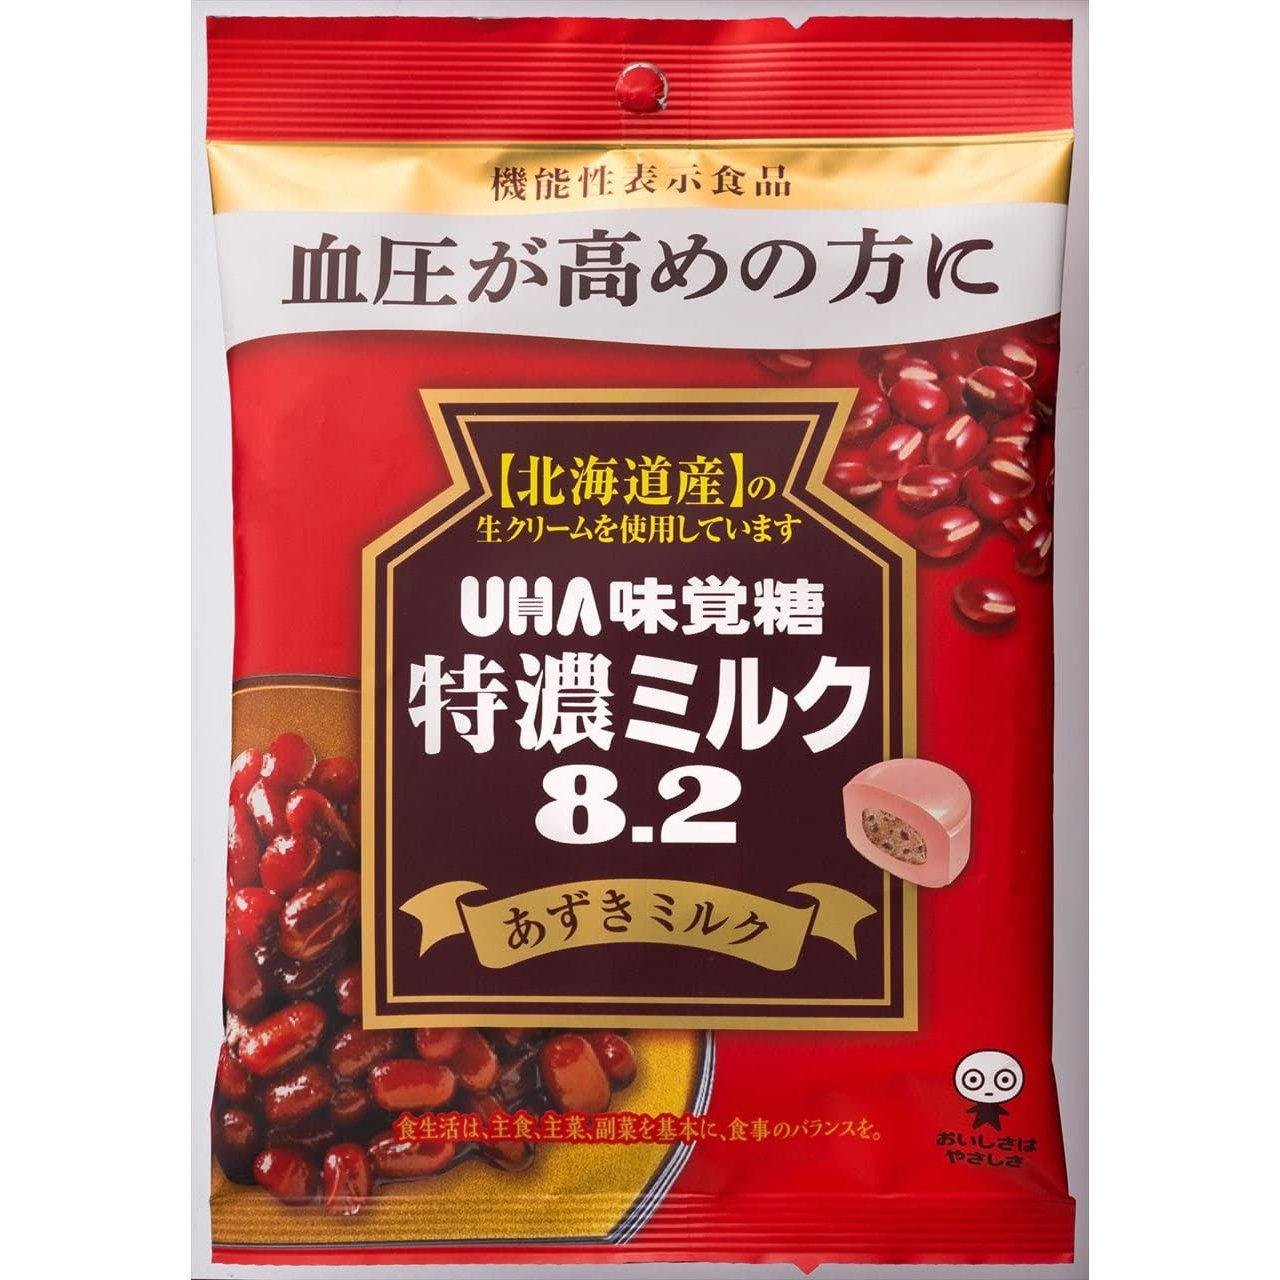 P-1-UHAM-AZUCAN-1-UHA Mikakuto Azuki Red Bean Milk Candy 93g.jpg